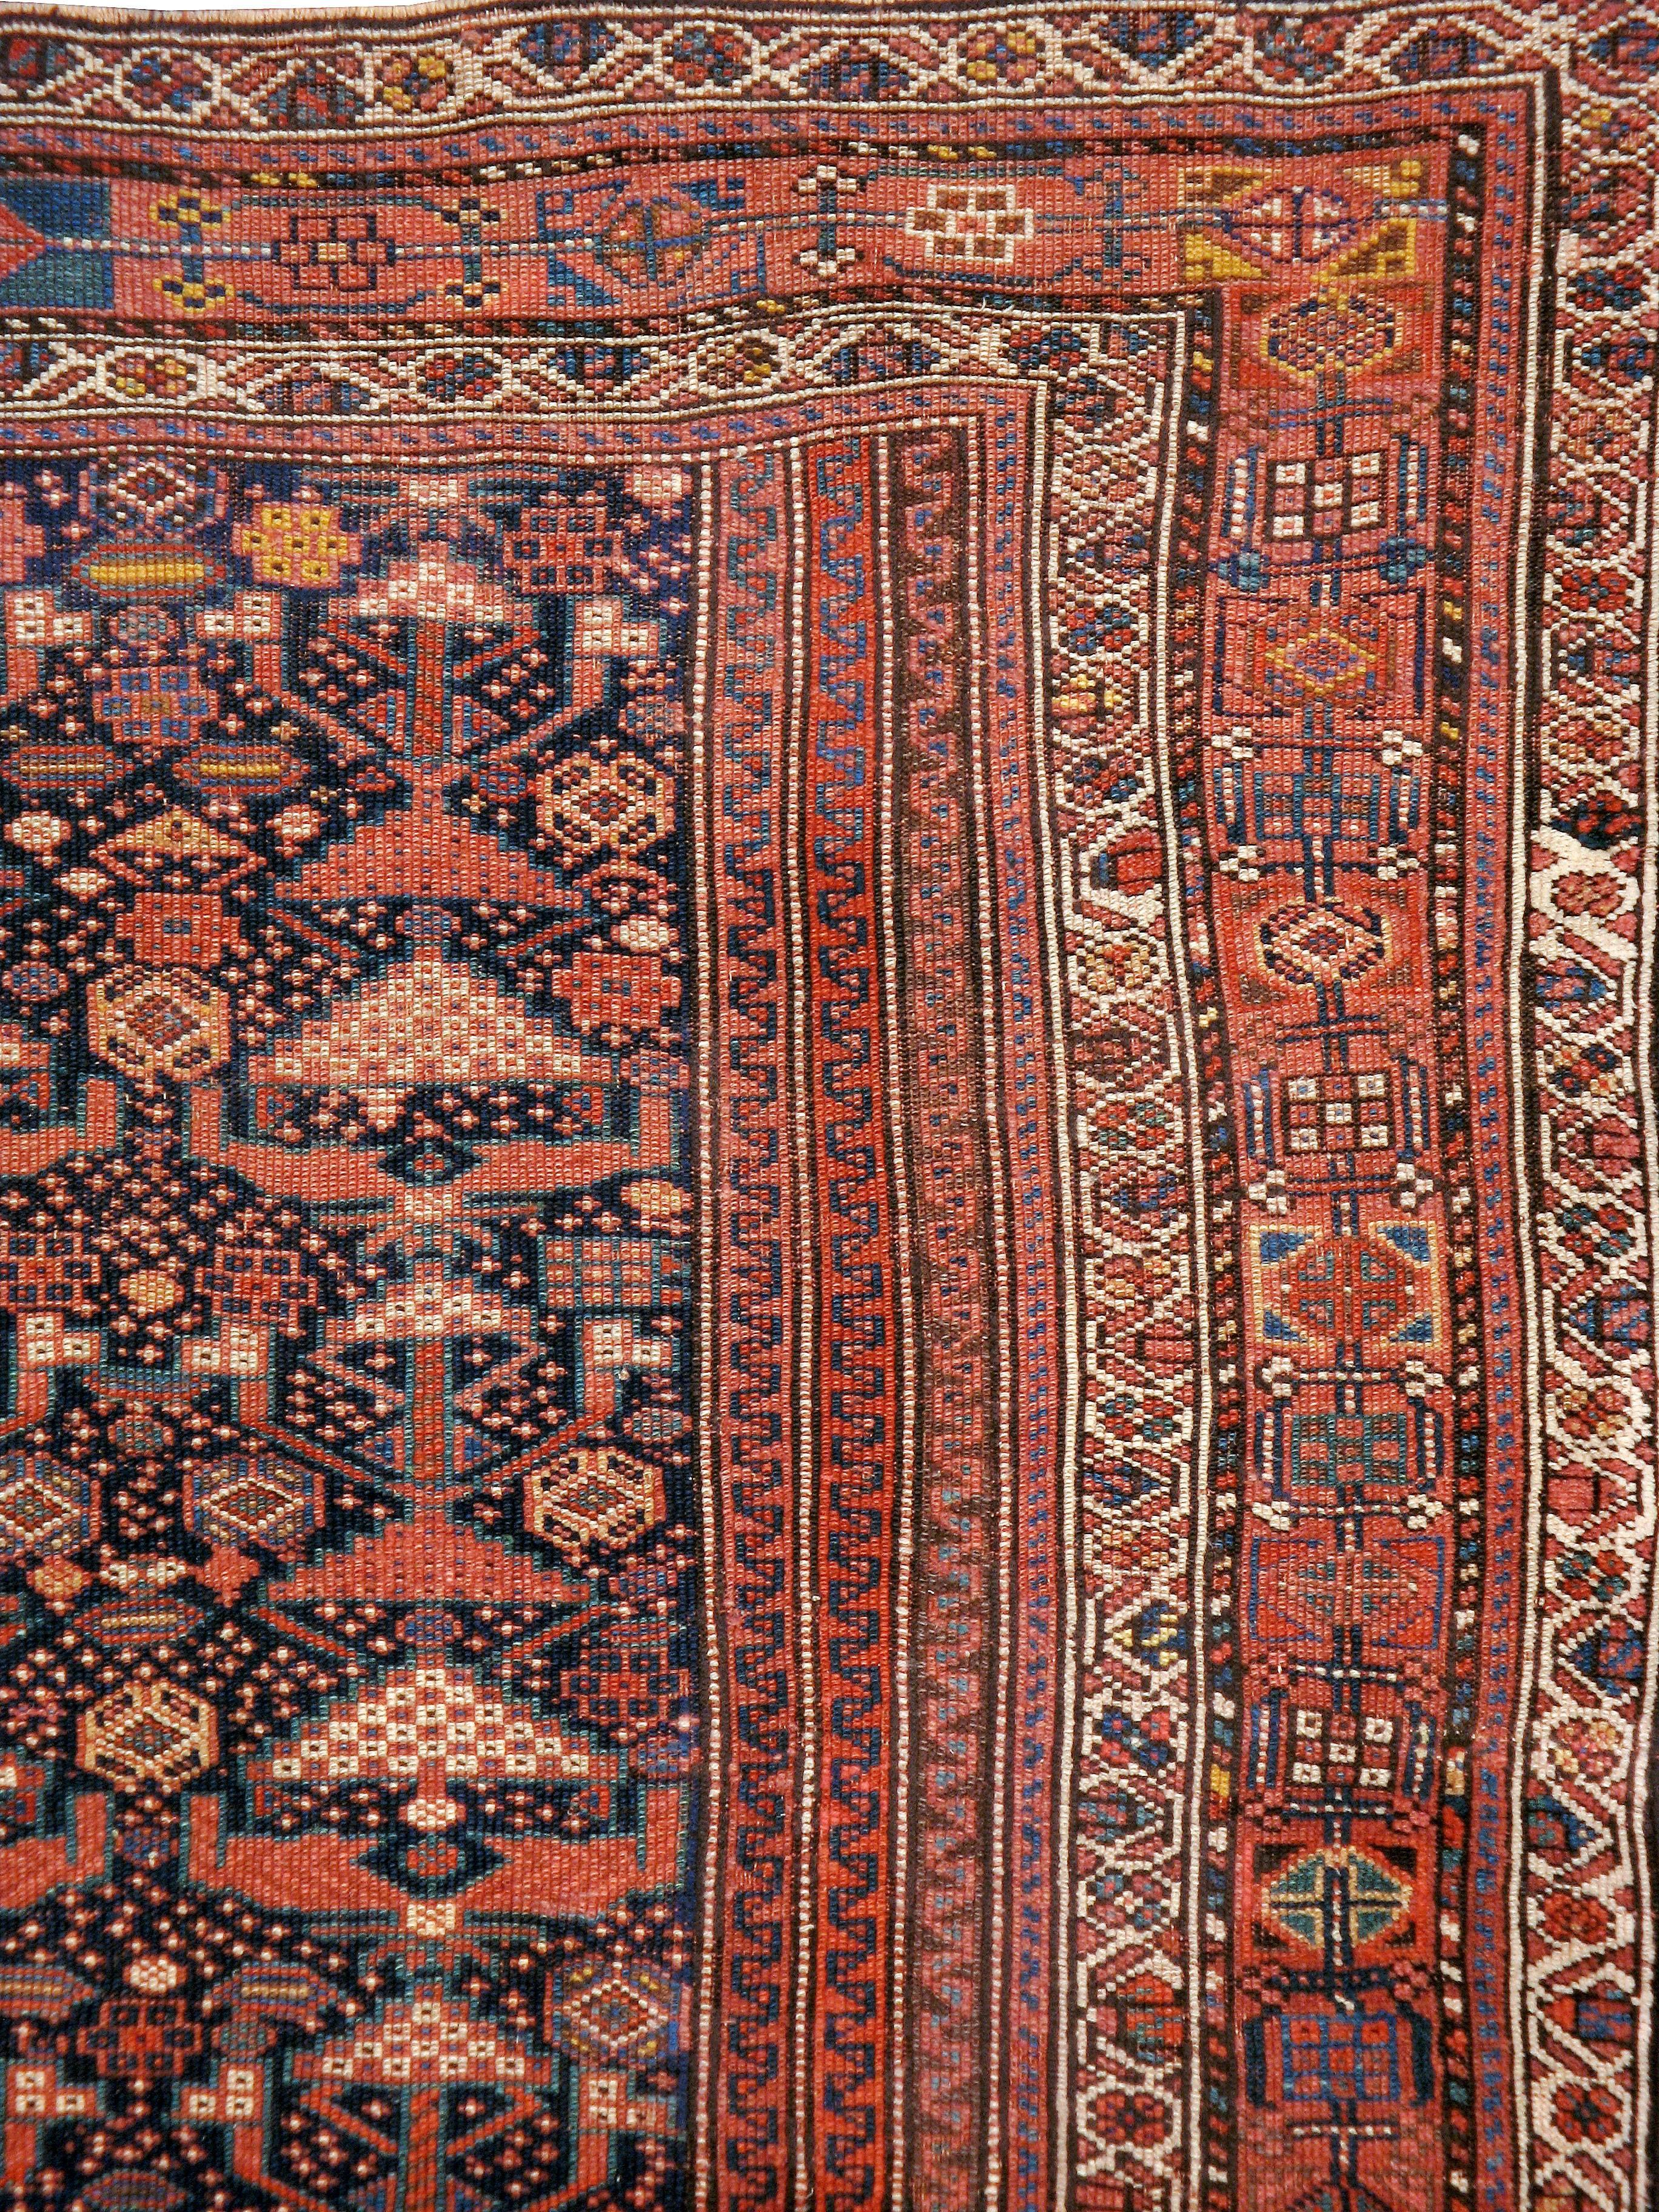 Hand-Woven Antique Persian Shiraz Rug